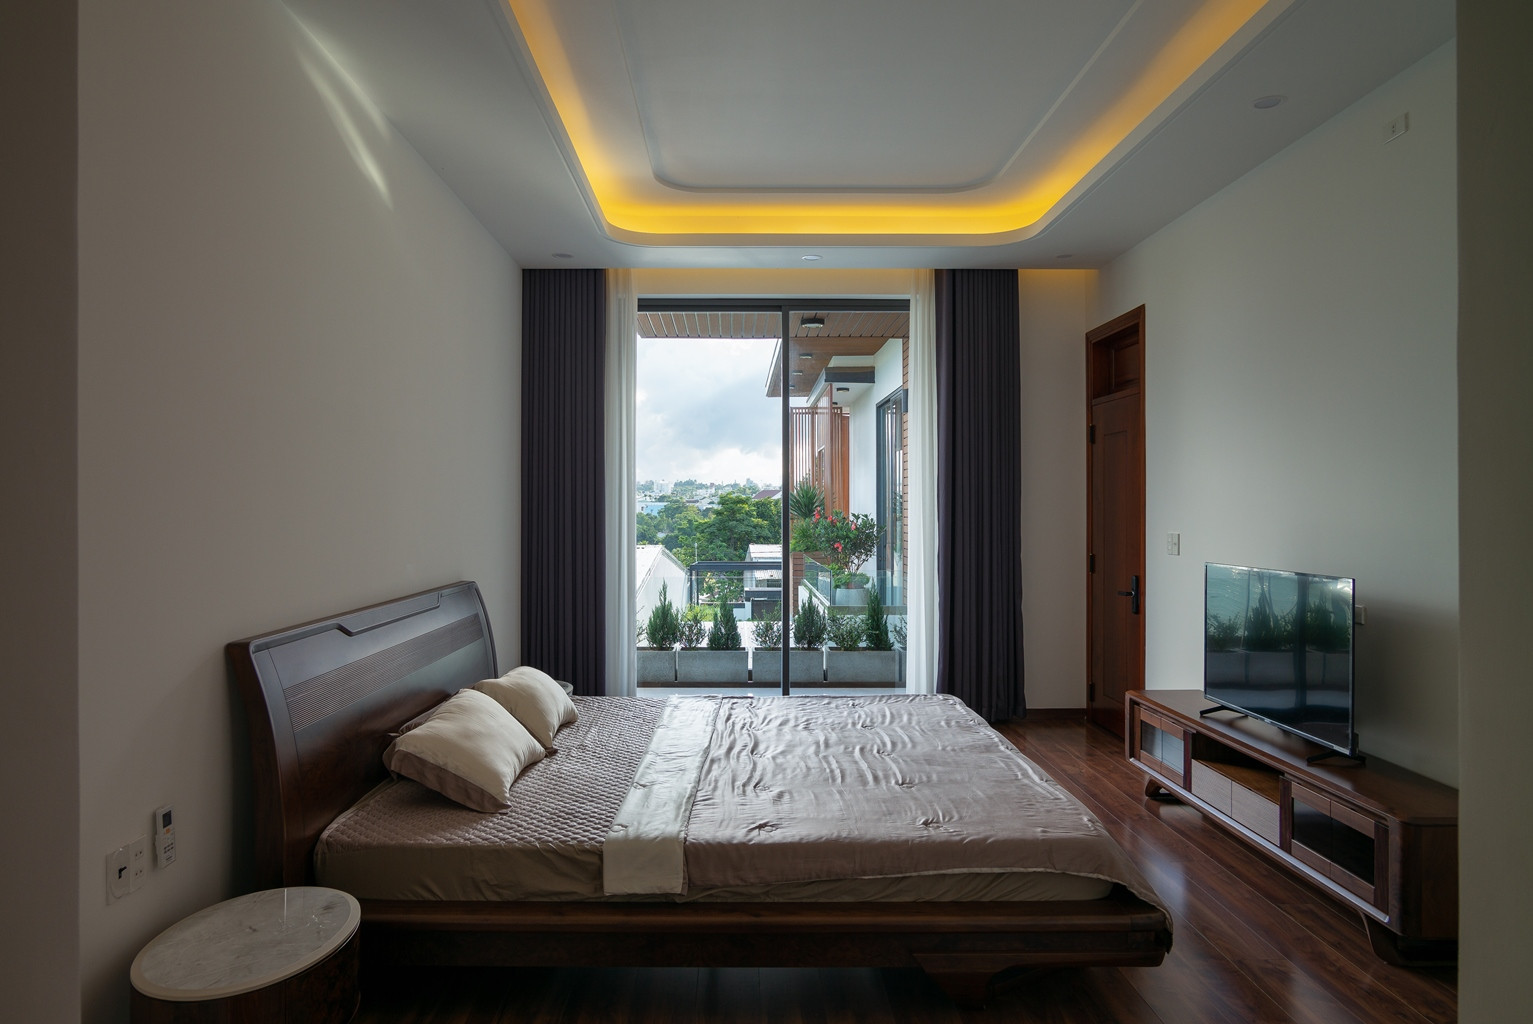 Phòng ngủ ở tầng 2 với thiết kế cửa kính tạo góc nhìn mở với bên ngoài, cảm giác thư thái với cây xanh, cảnh quan thiên nhiên.